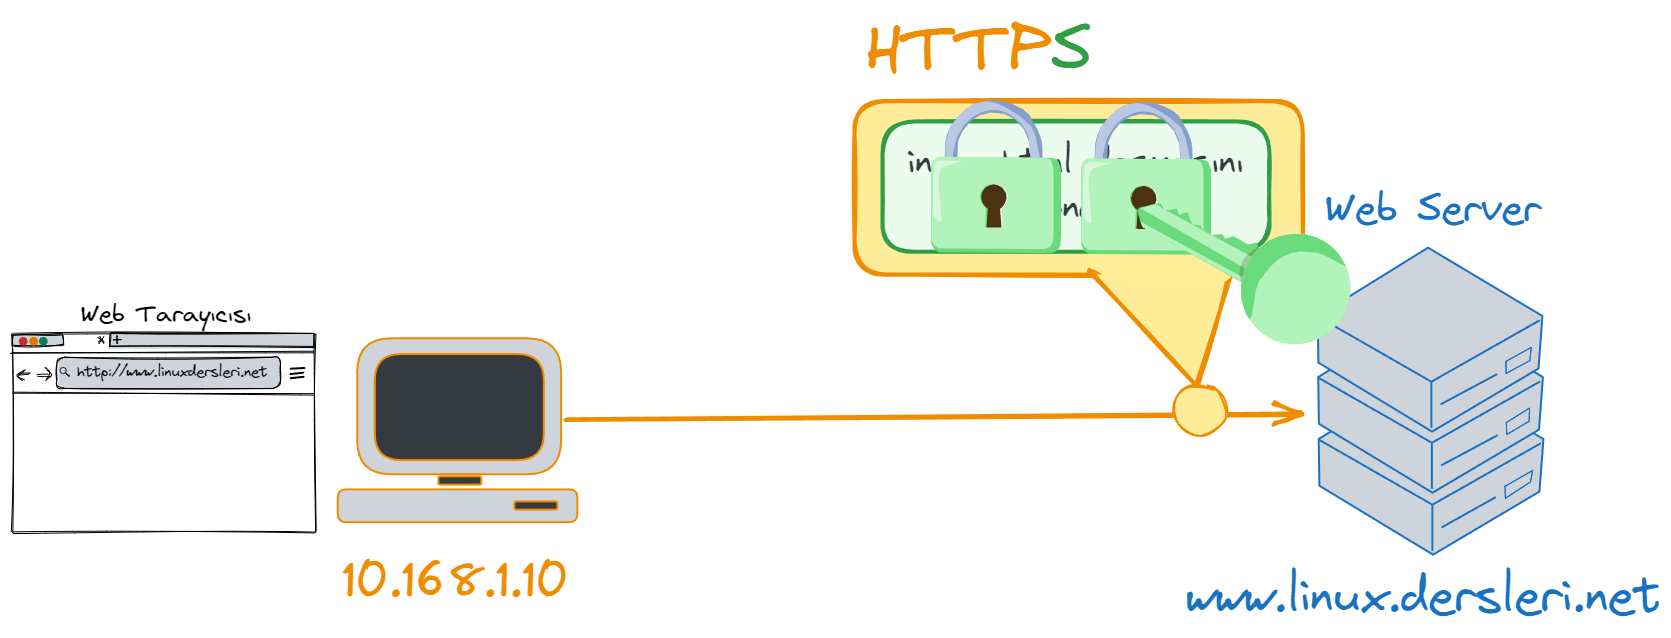 HTTPS-key.webp